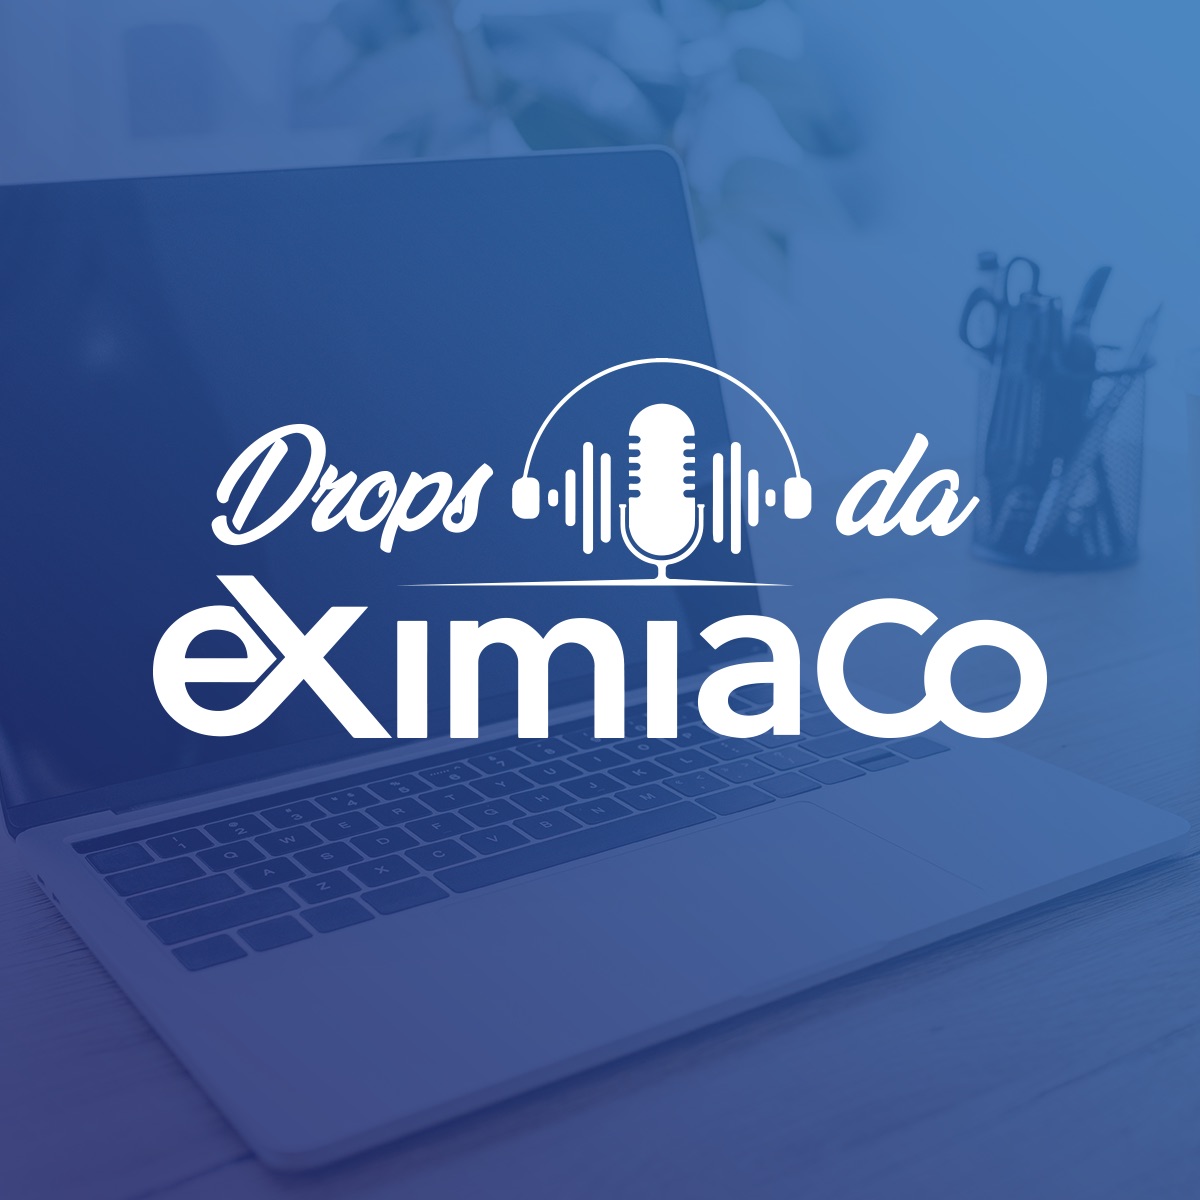 Drops da EximiaCo